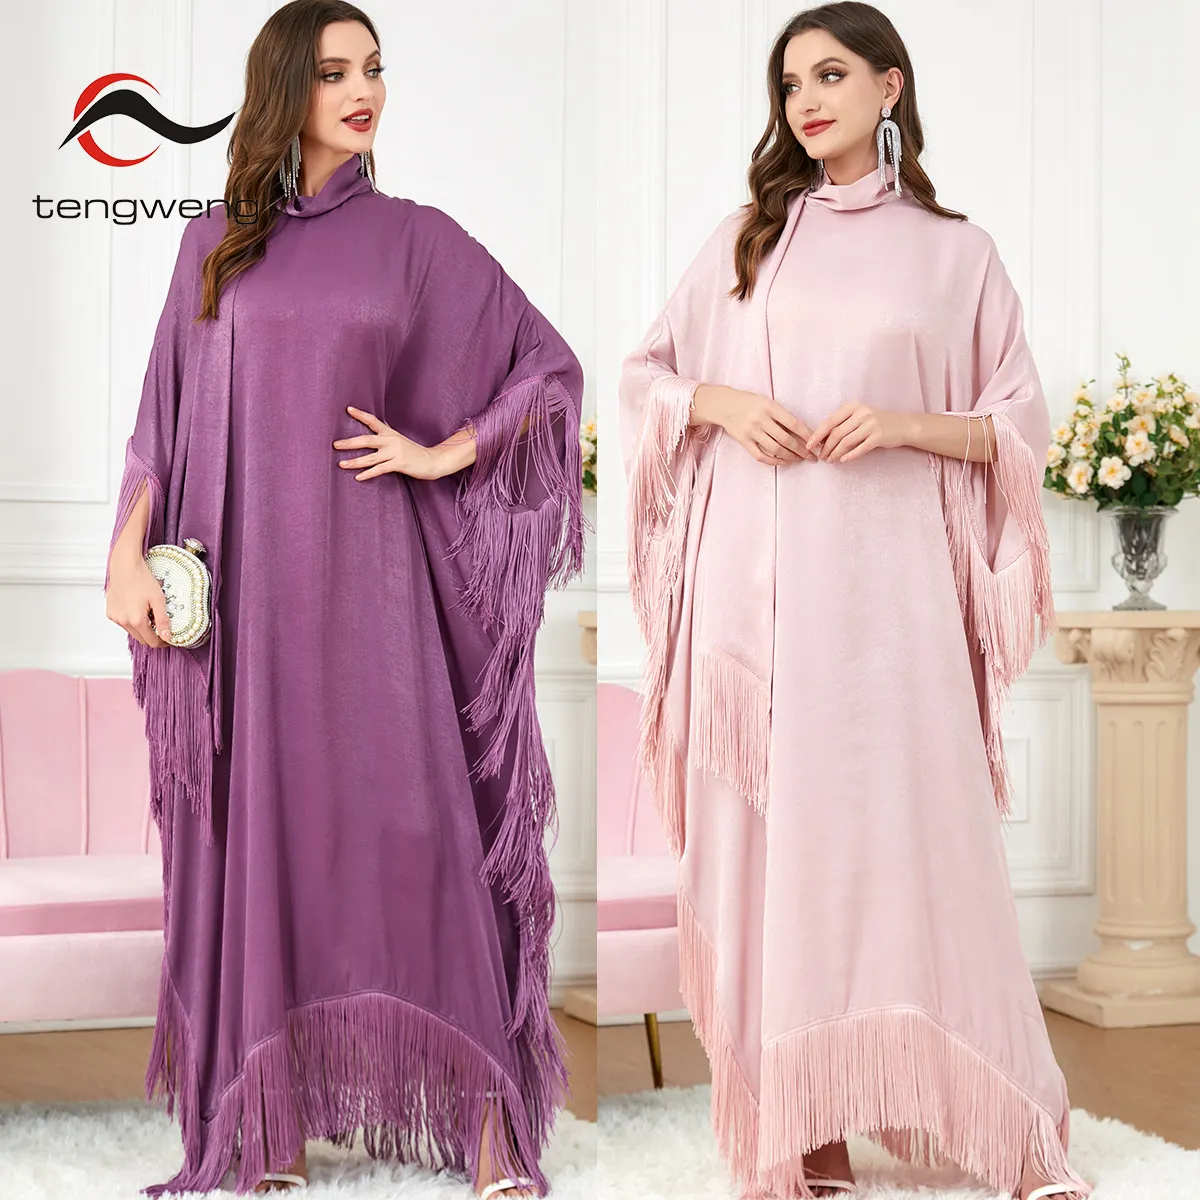 TW Islamic clothing Arabic Muslim women tassel clothes set Turkey Dubai solid dress abaya